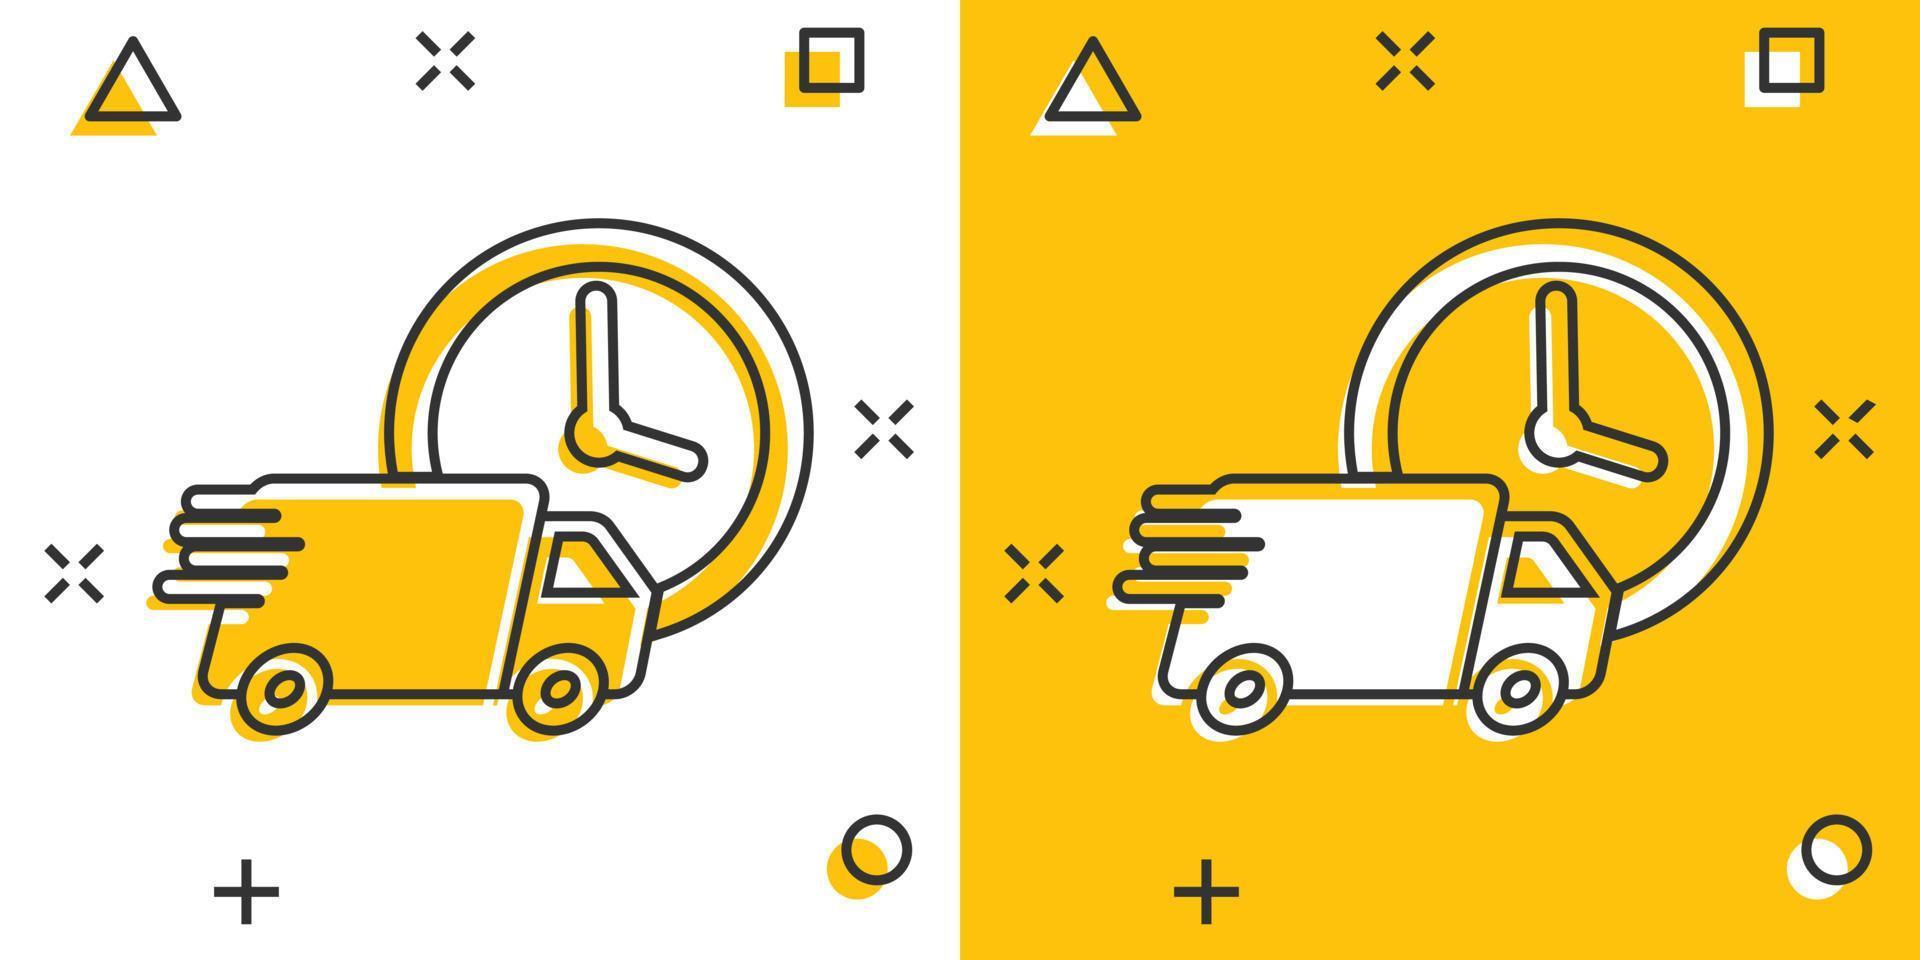 vektor tecknad serie leverans lastbil 24 timmar ikon i komisk stil. 24 timmar snabb leverans service frakt tecken illustration piktogram. bil skåpbil företag stänk effekt begrepp.